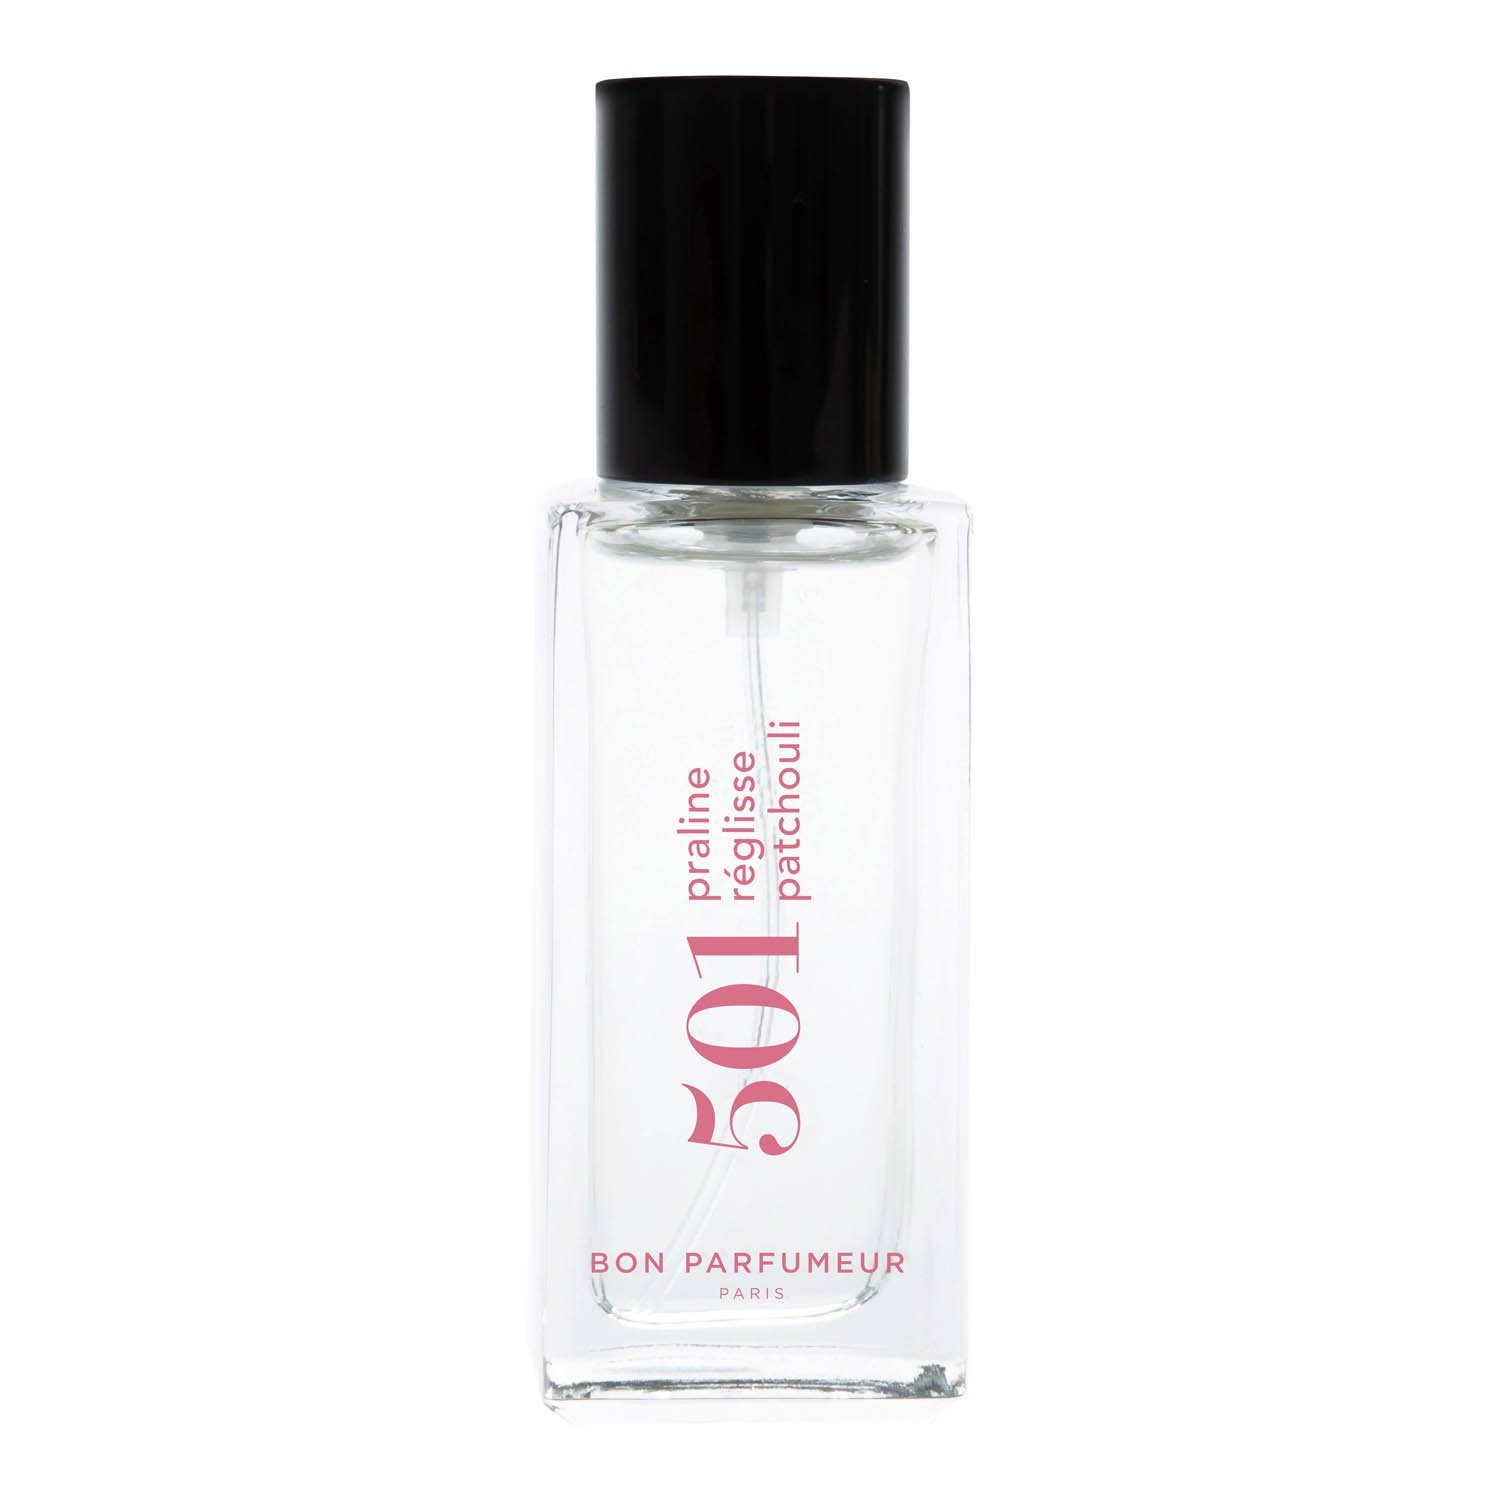 Bon Parfumeur Eau de Parfum 501 15 ml